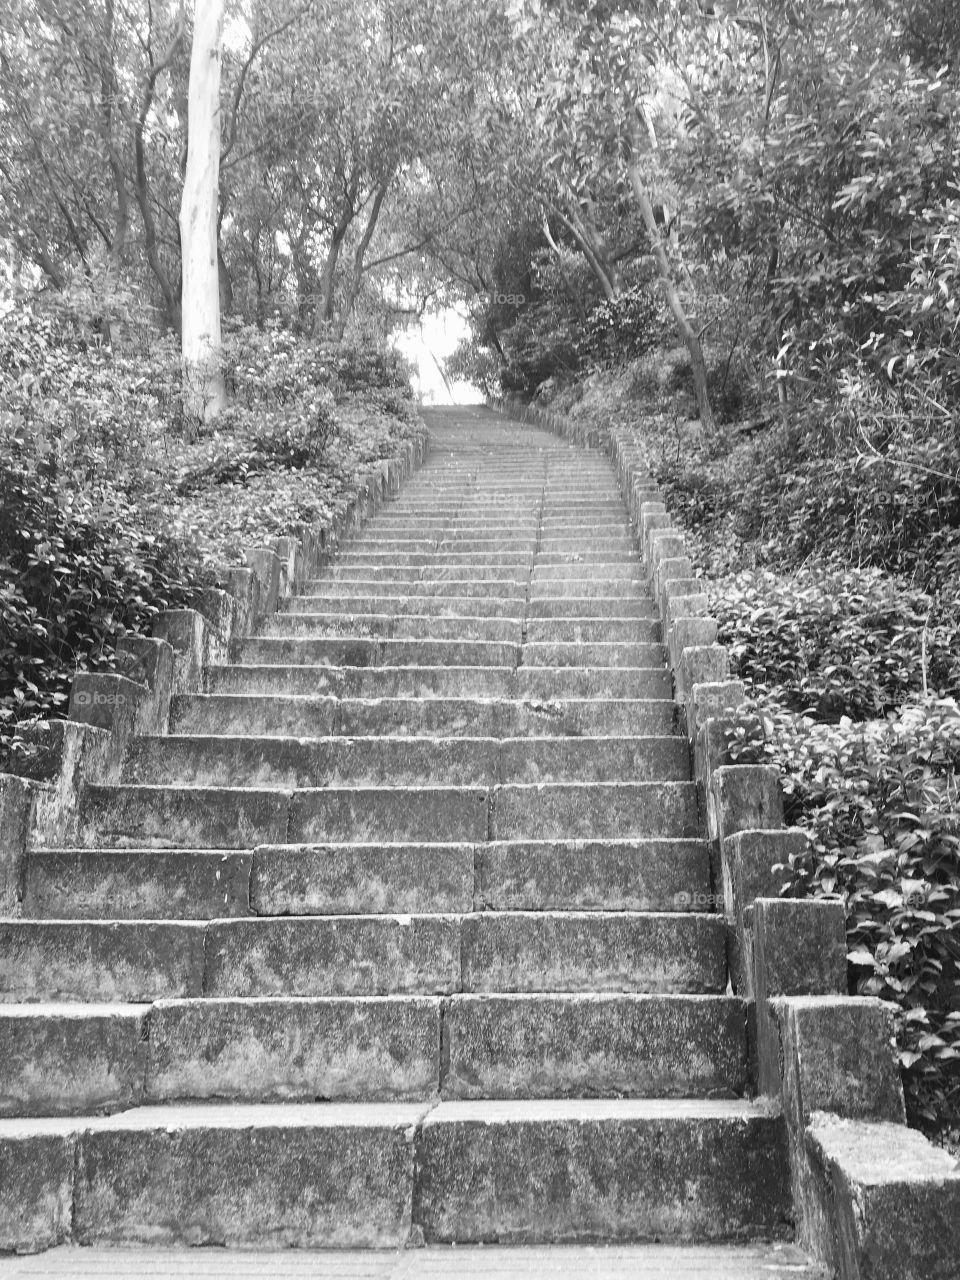 Steps at Nanshan Mountain in Shenzhen, China